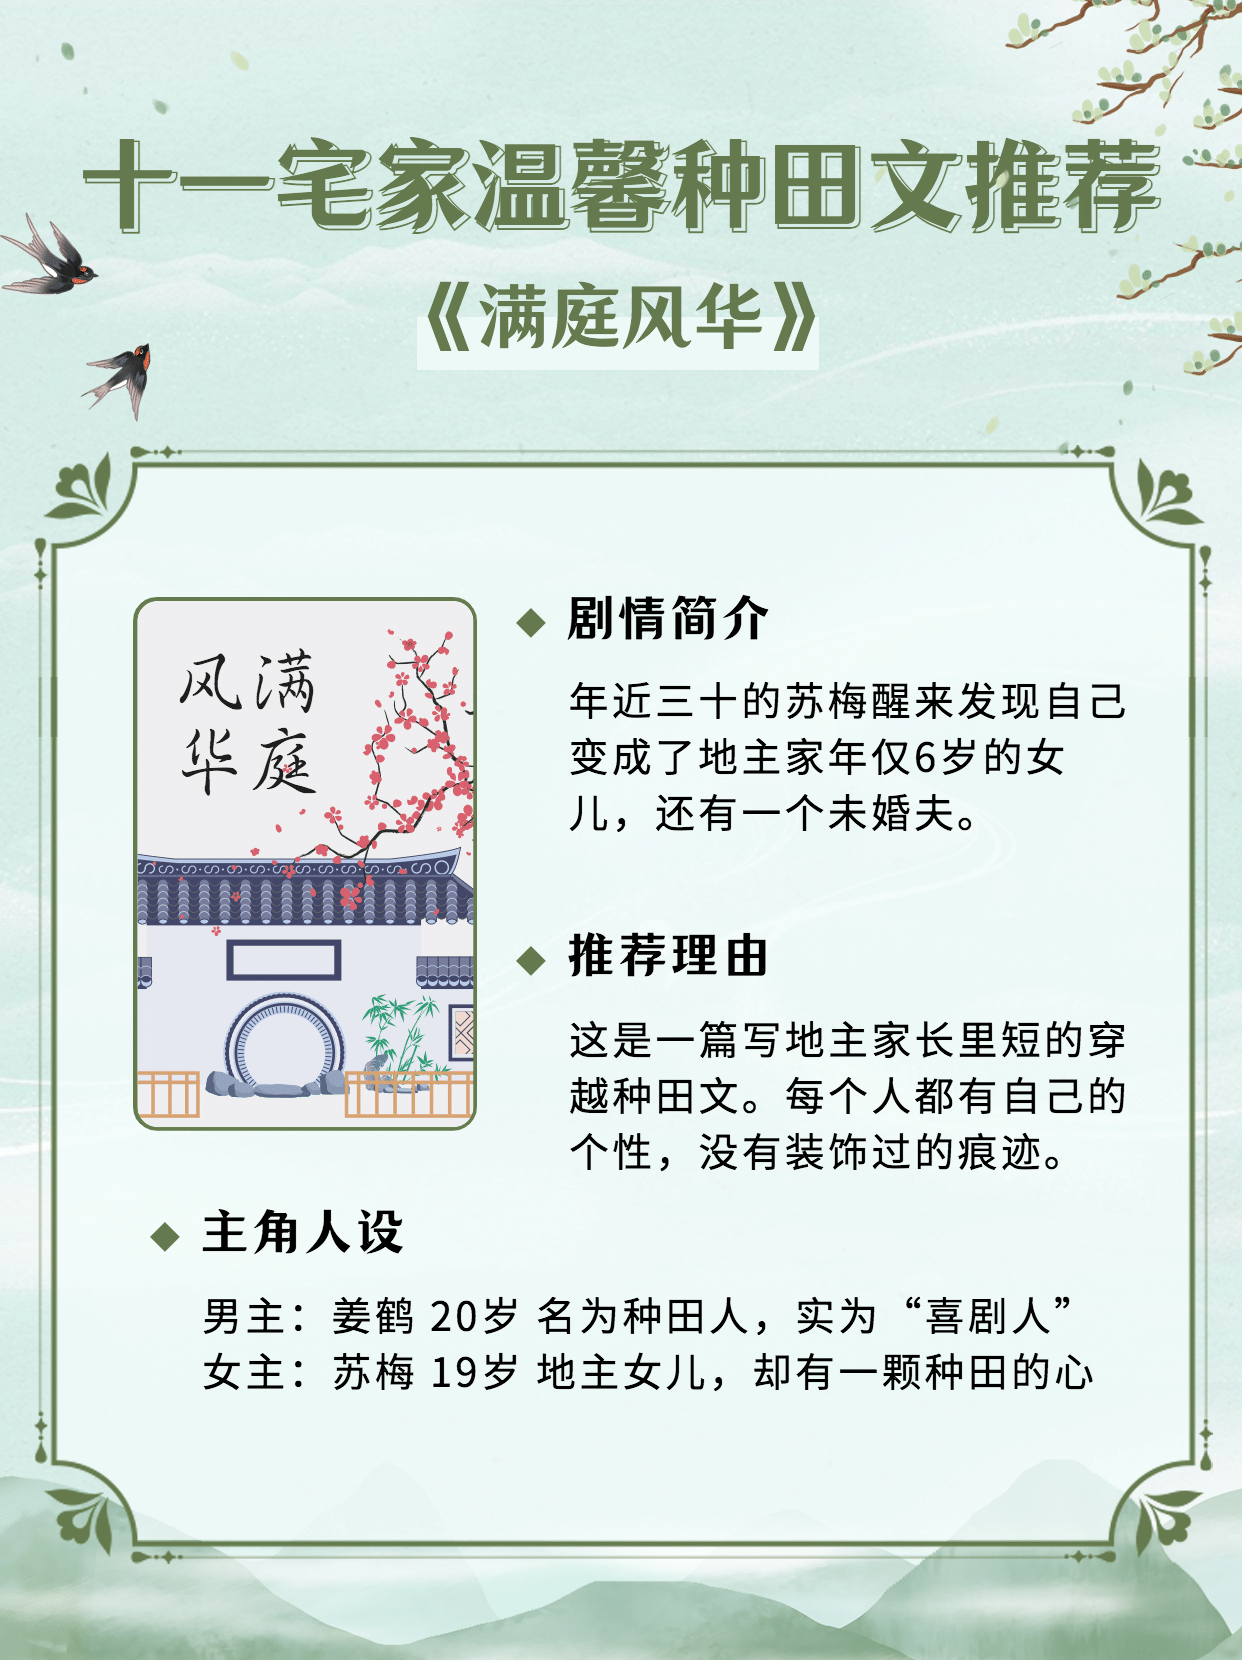 国庆节古风小说推荐小红书封面配图